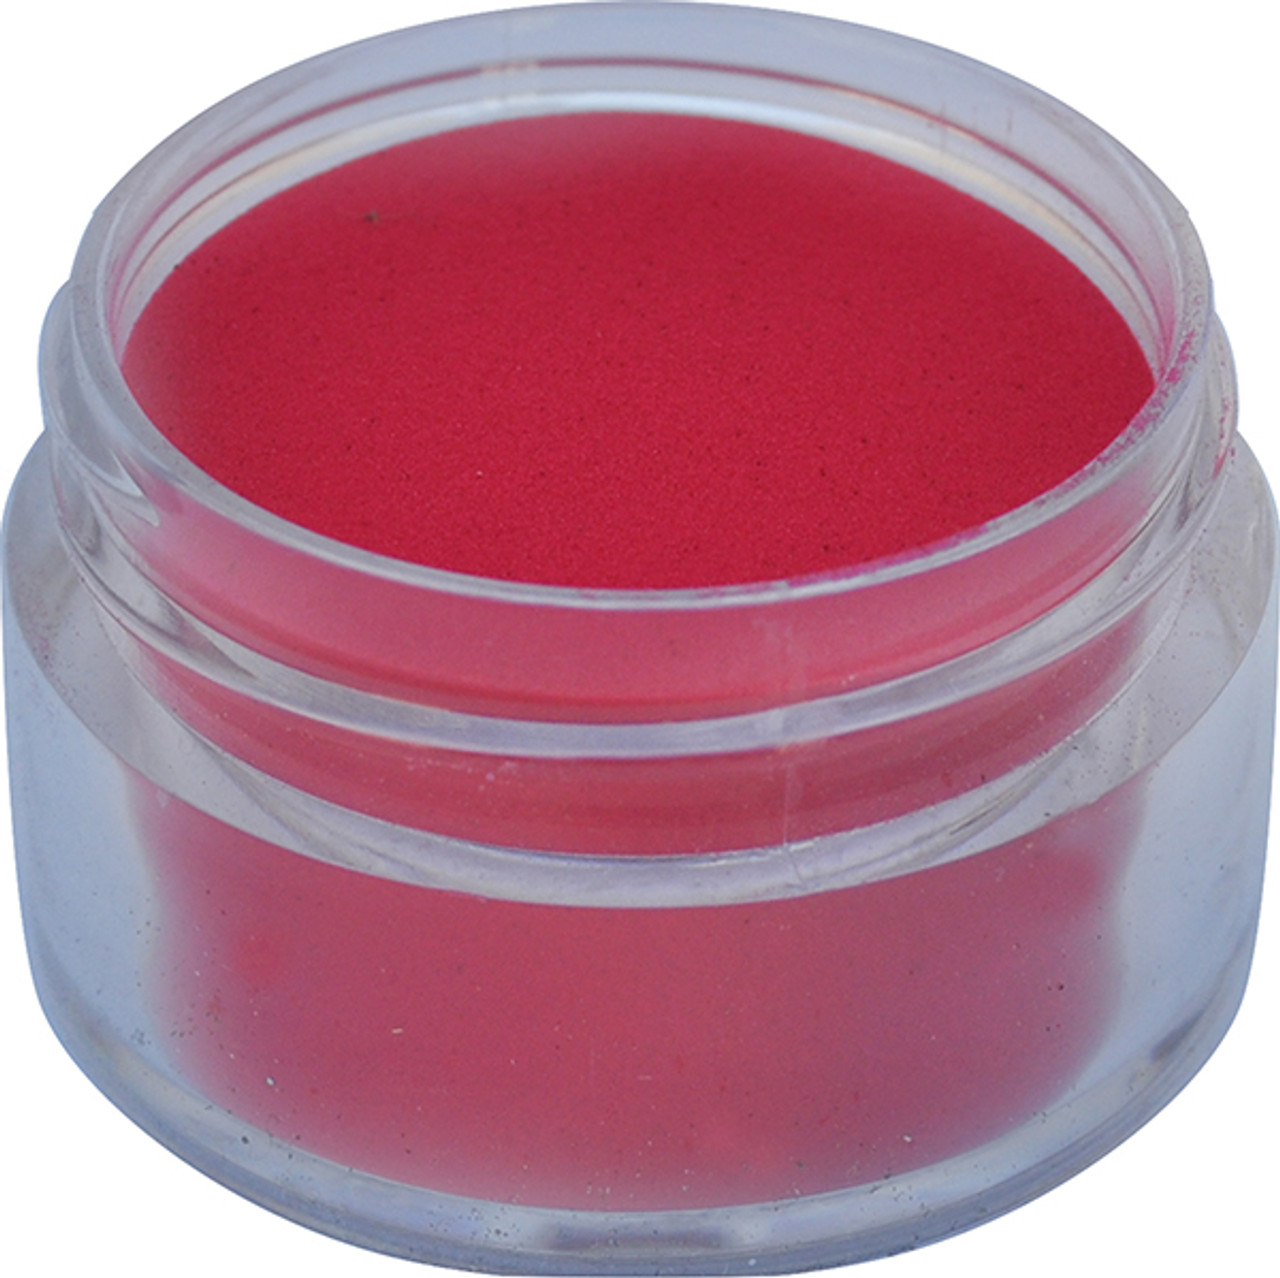 U2 PURE Color Powder - Red - 1 lb